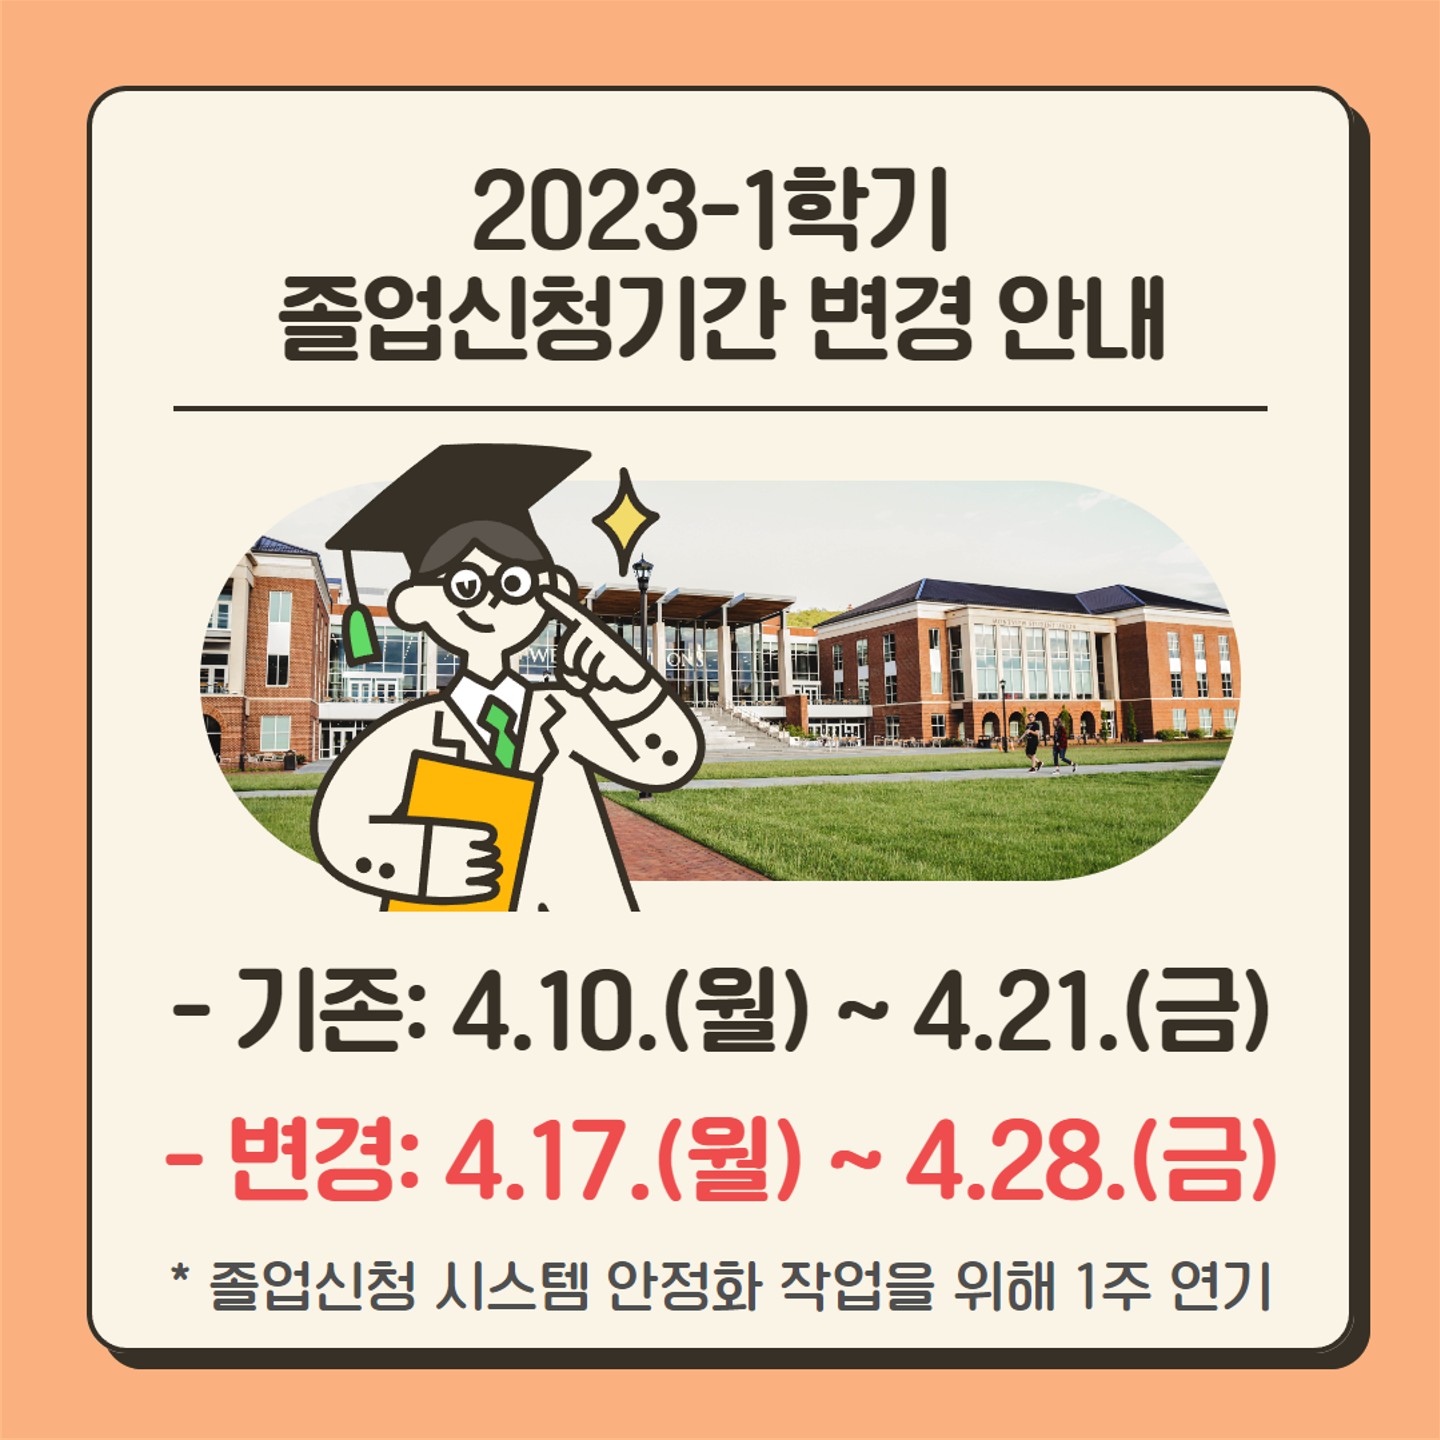 2023-1학기 졸업신청기간 변경 안내_1